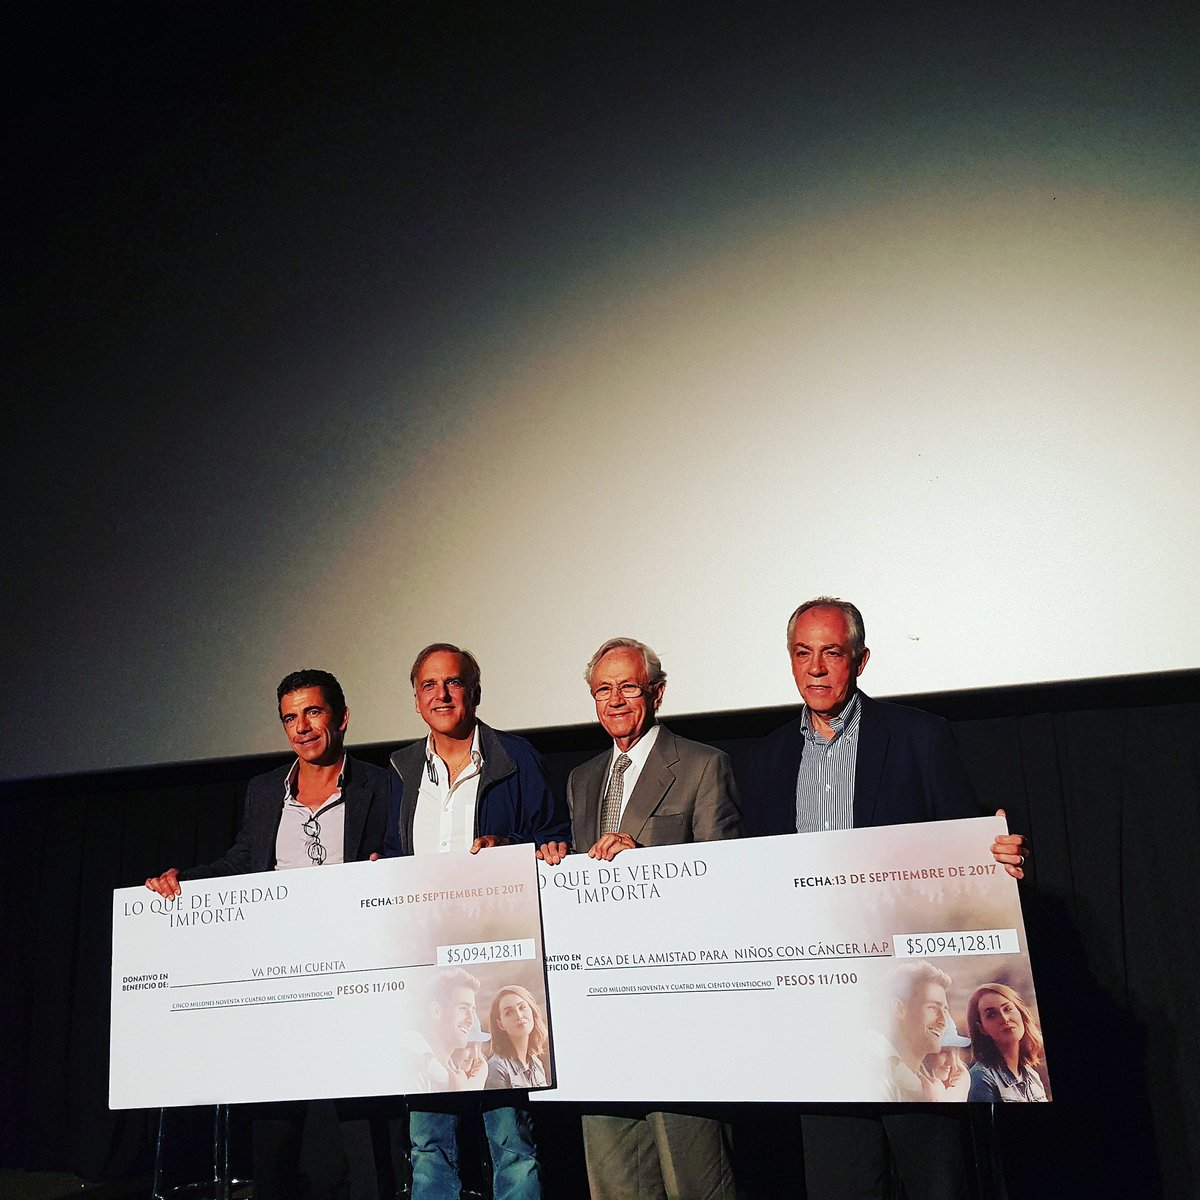 Ayer, en México, @pacoarango entregó un gran donativo (500.000€) a las dos causas de la película @lqdvi_mx: @CasadelaAmistad y @VaXMiCuenta